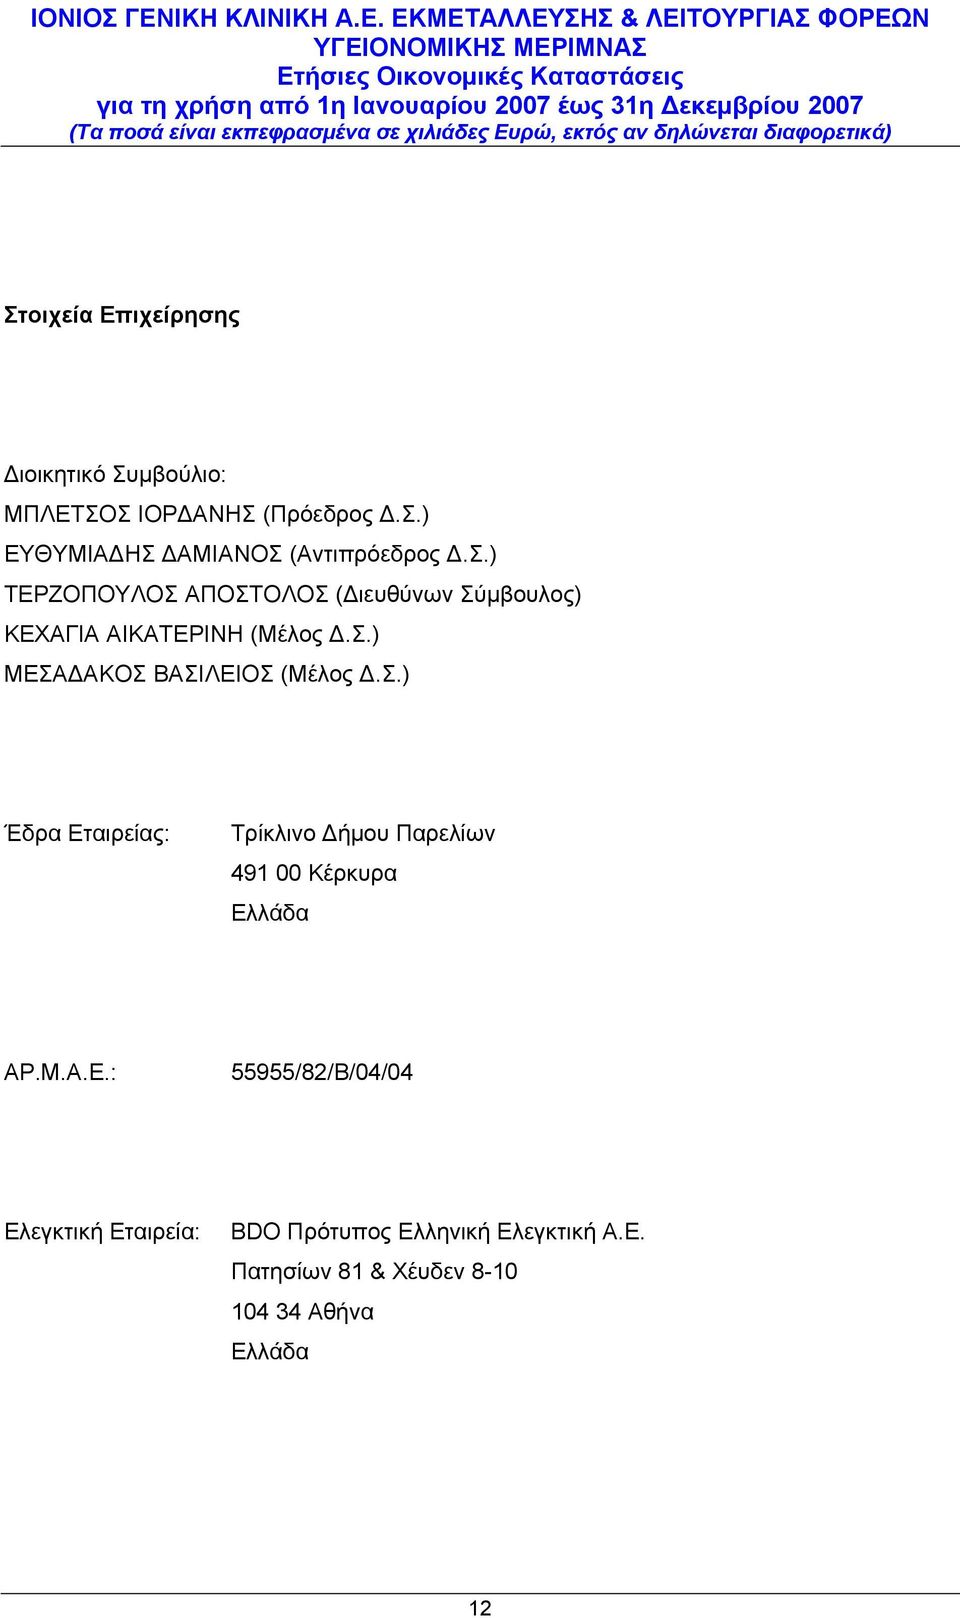 Σ.) Έδρα Εταιρείας: Τρίκλινο Δήμου Παρελίων 491 00 Κέρκυρα Ελλάδα ΑΡ.Μ.Α.Ε.: 55955/82/Β/04/04 Ελεγκτική Εταιρεία: BDO Πρότυπος Ελληνική Ελεγκτική Α.